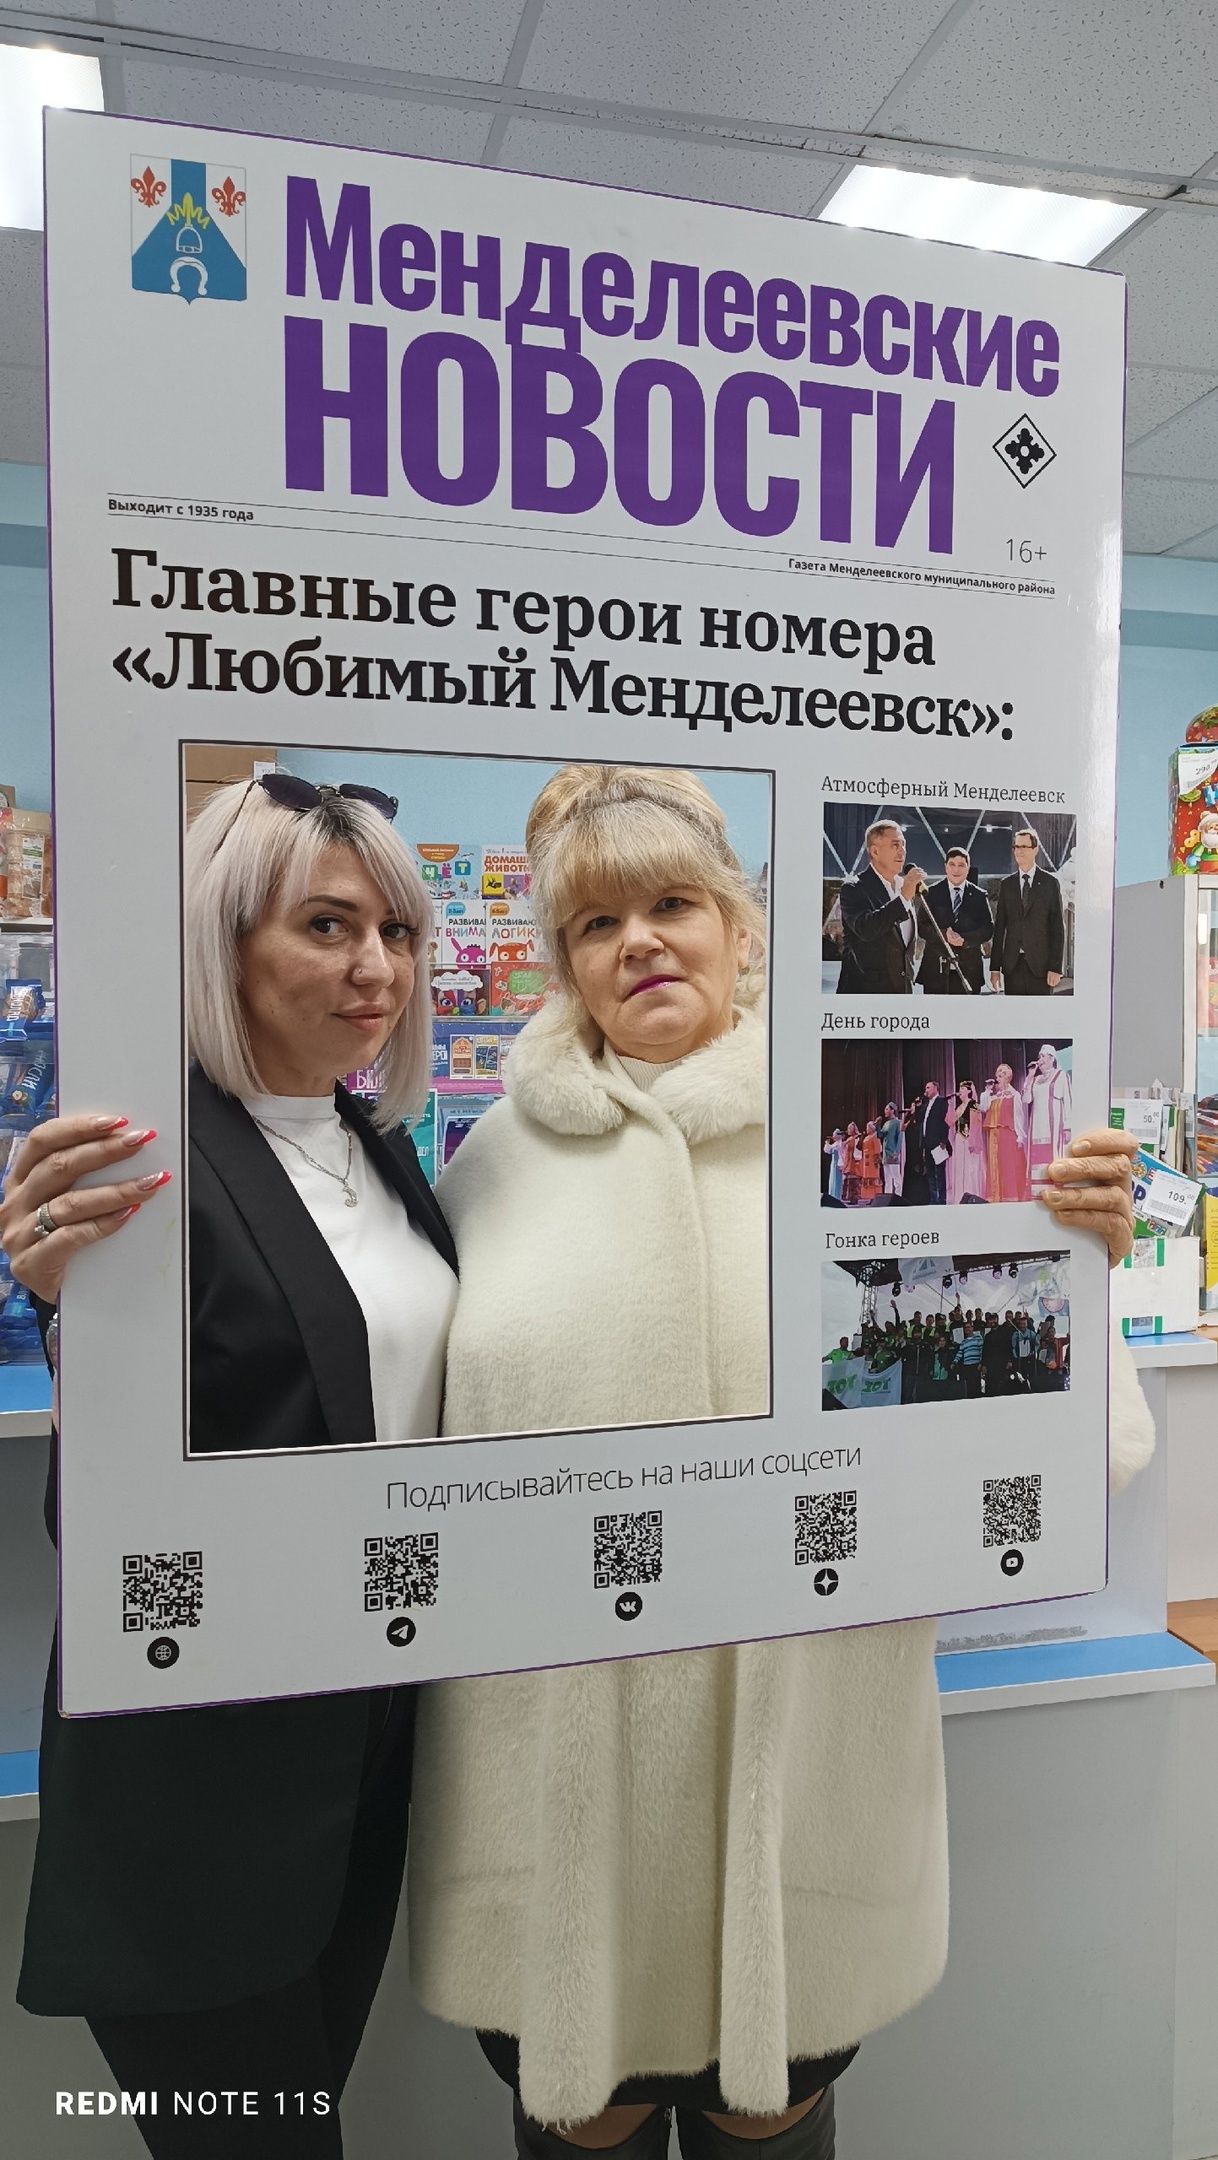 Начальник почтового отделения Альбина Шакирова оформила подписку на районное издание МН для мамы